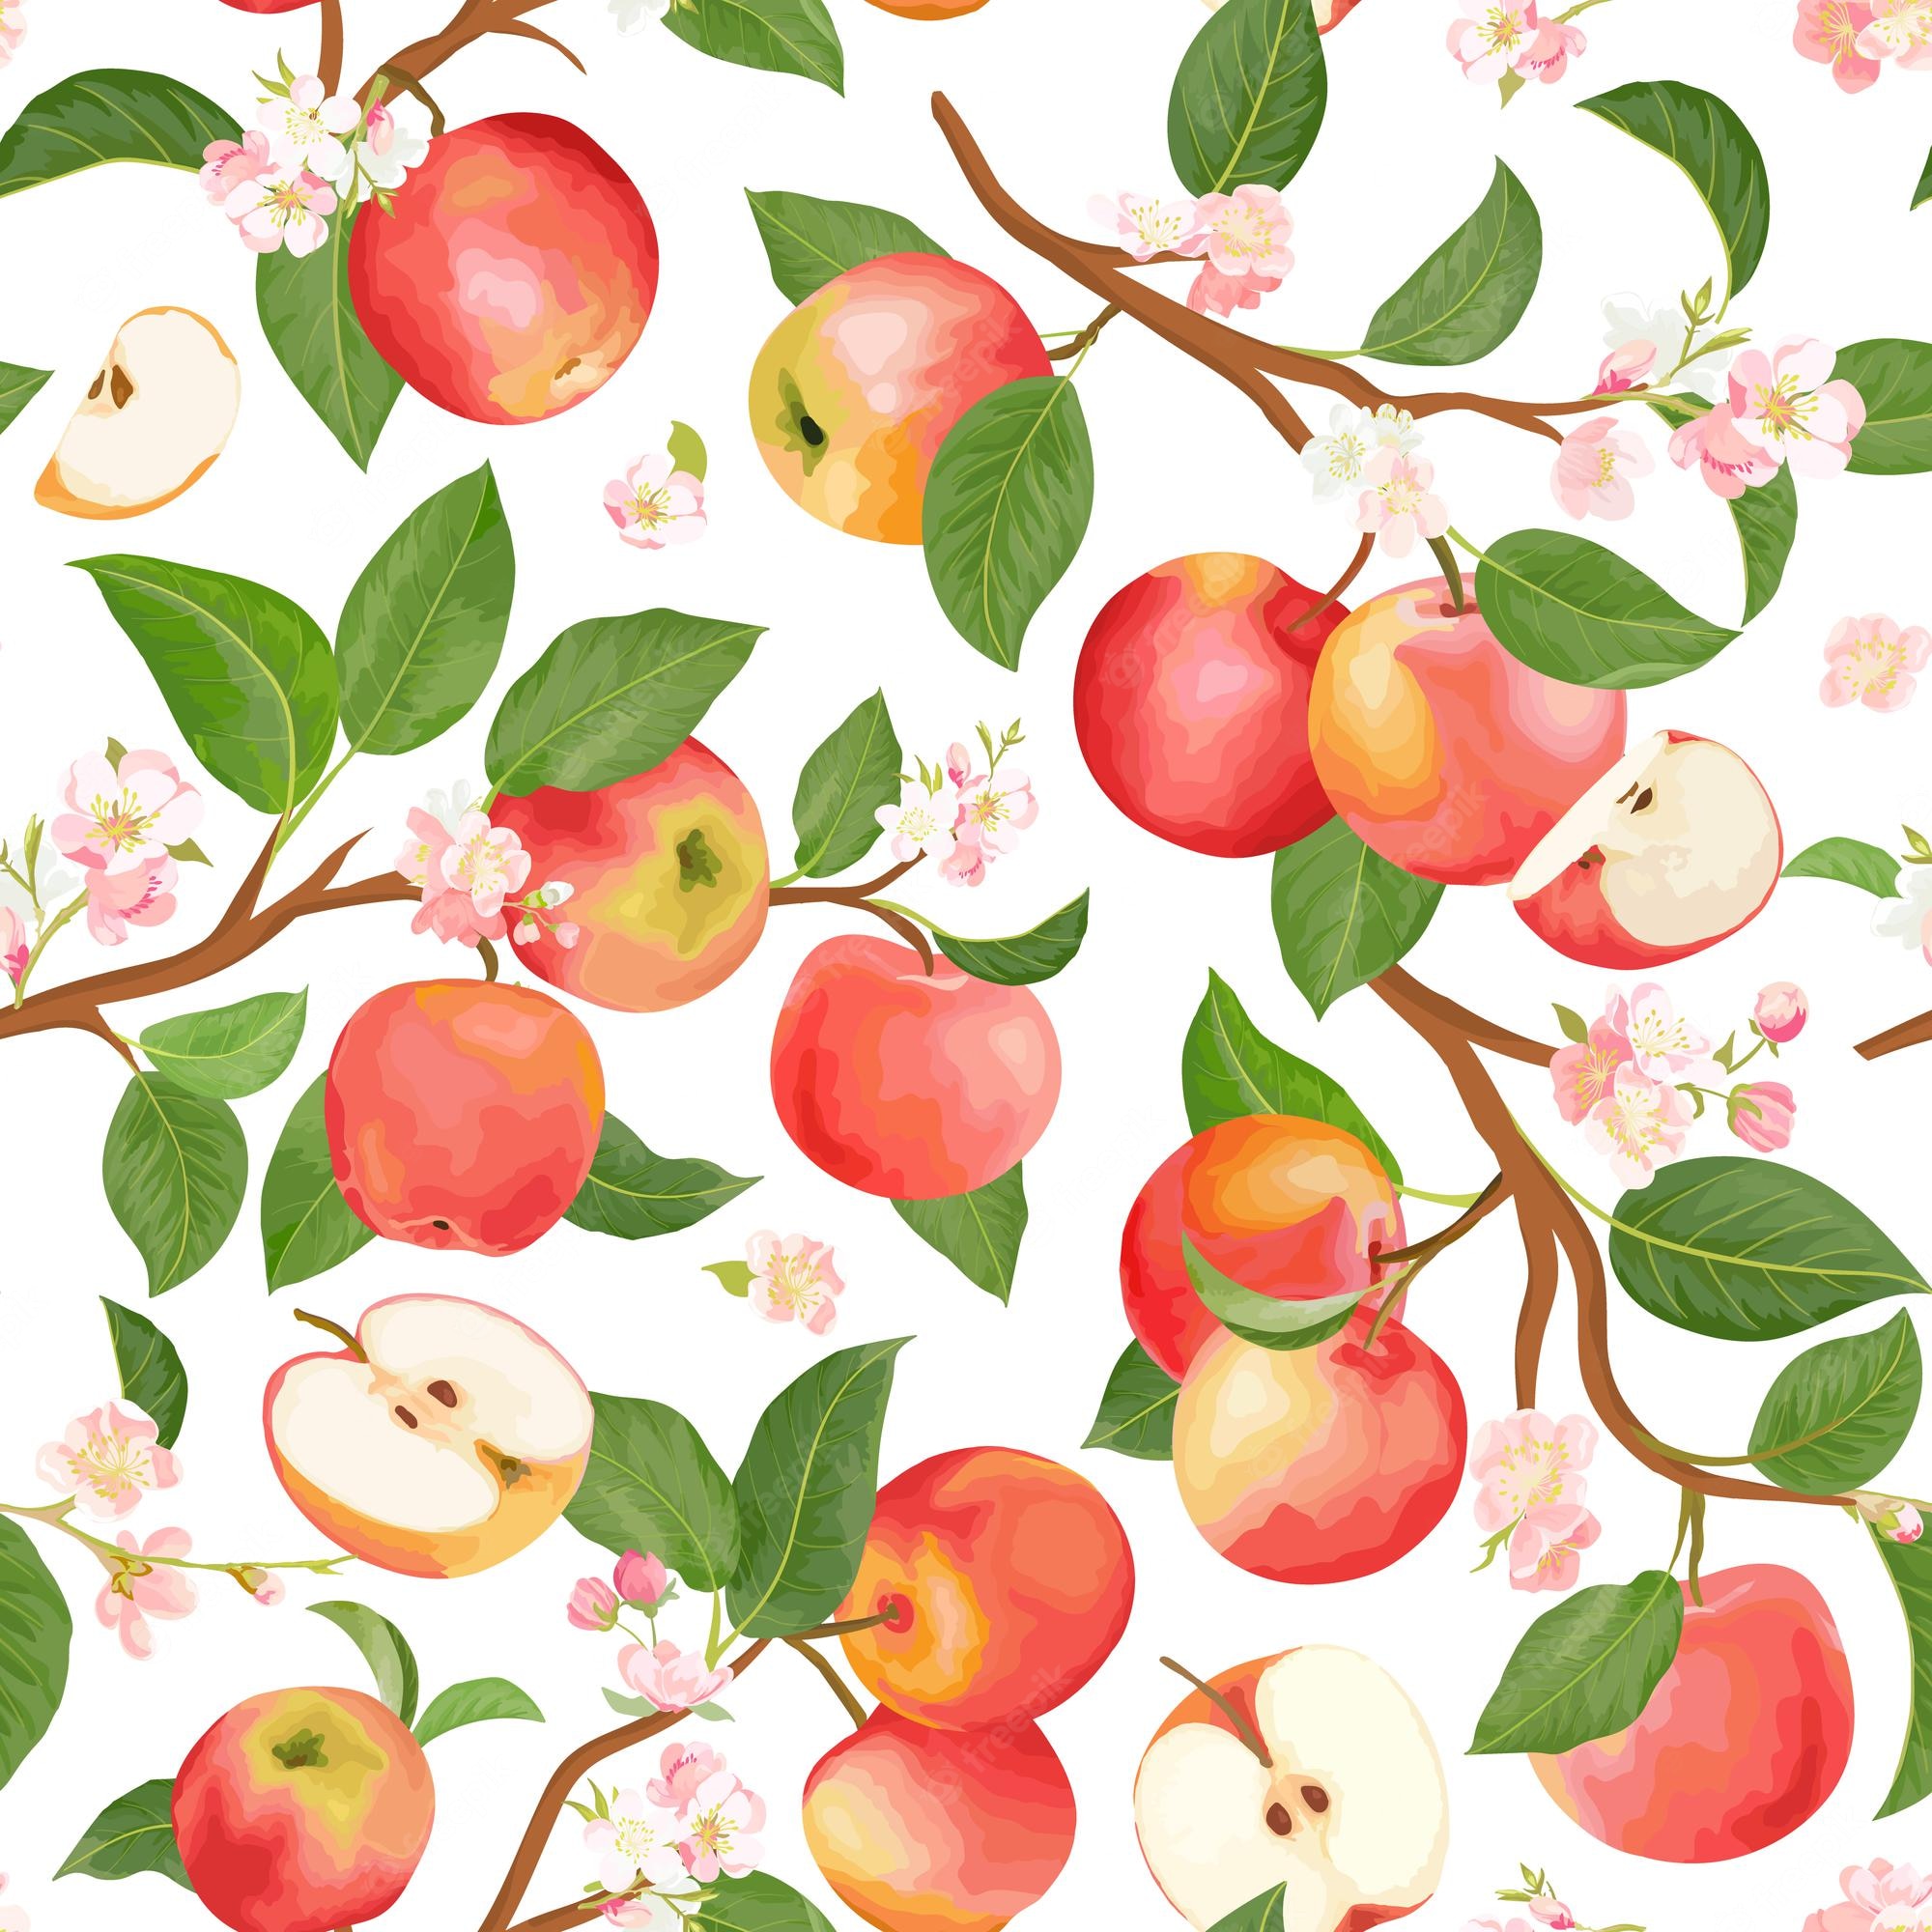 Autumn Apple Wallpapers